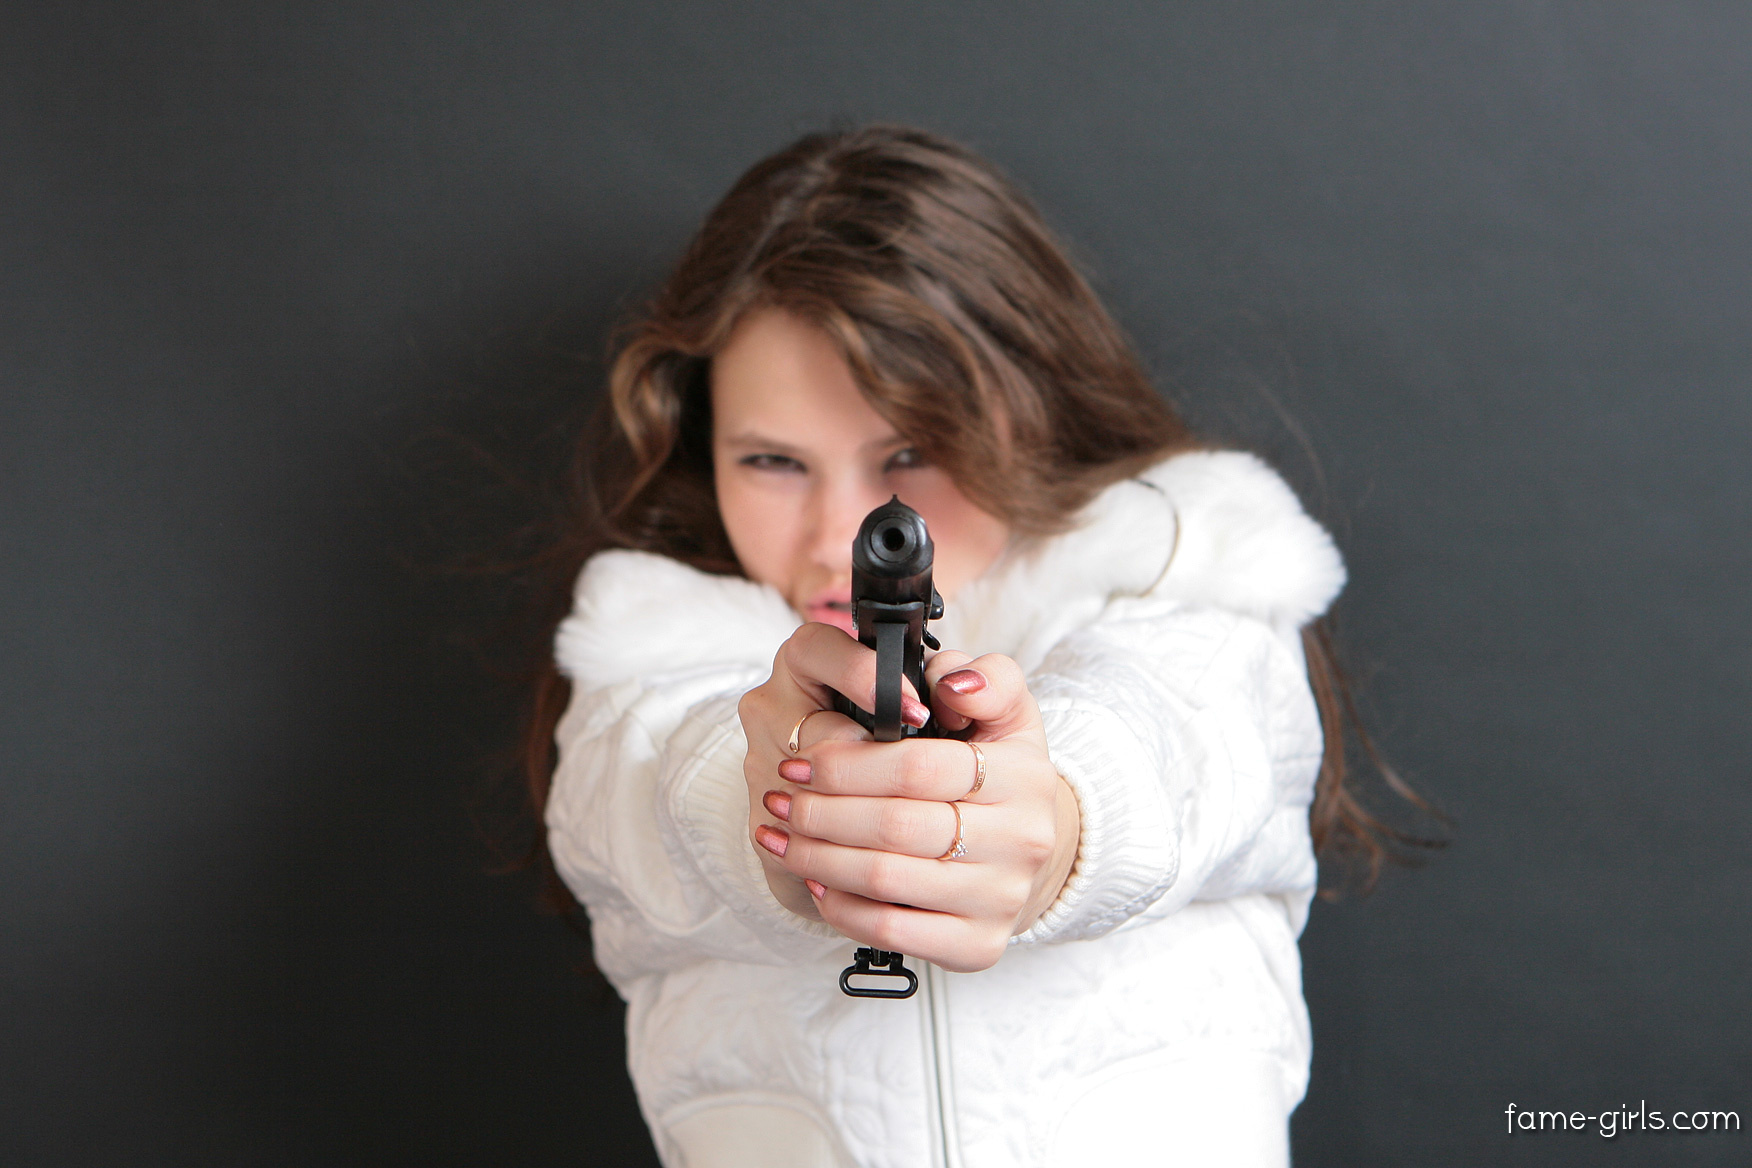 People 1752x1168 model pistol white jacket Makarov pistol Famegirls women Sandra Orlow